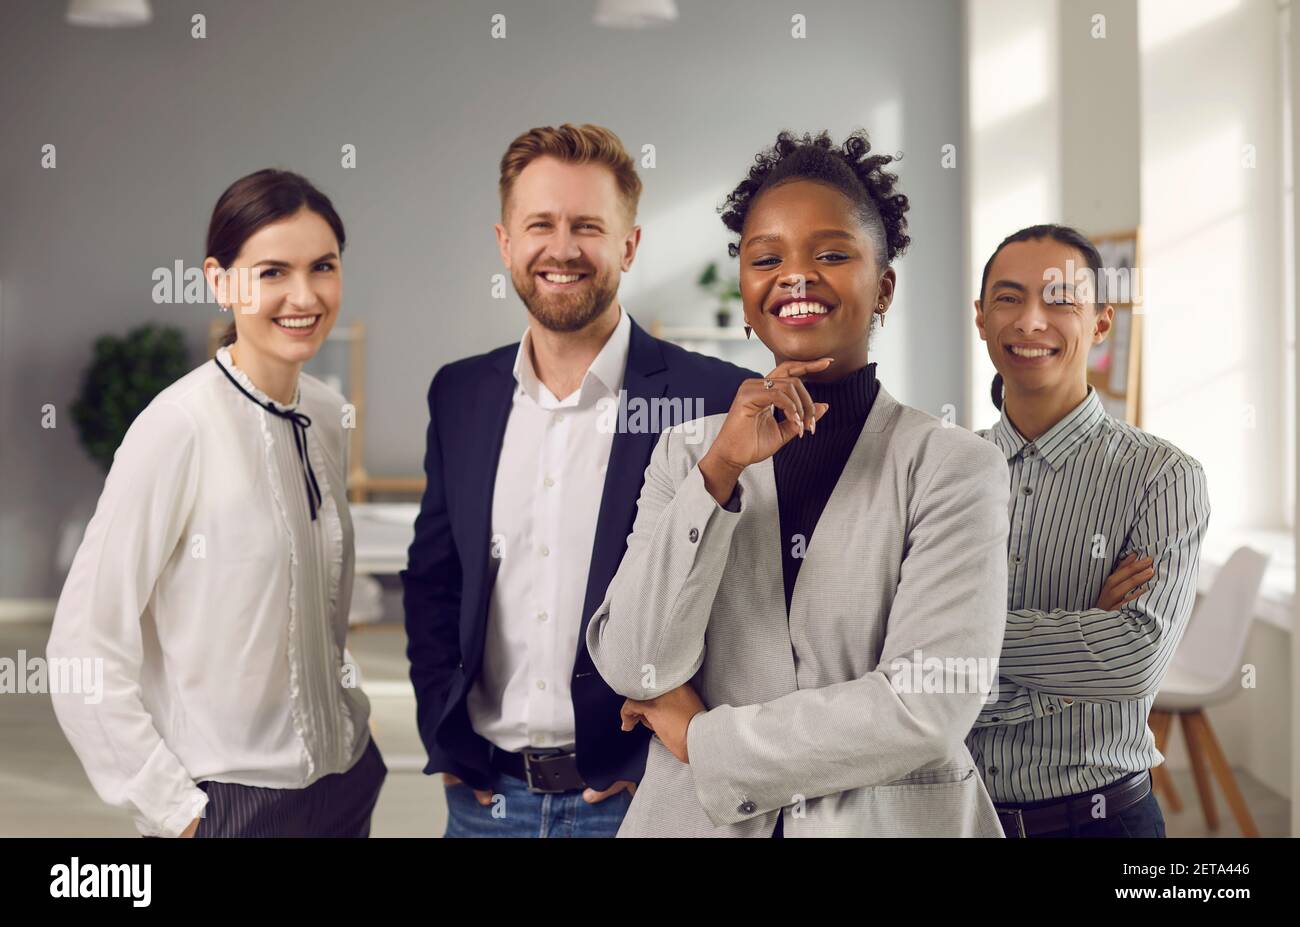 Erfolg, Führung, geschäftliche Zusammenarbeit von Mixed-Race-Spezialisten Konzept Stockfoto